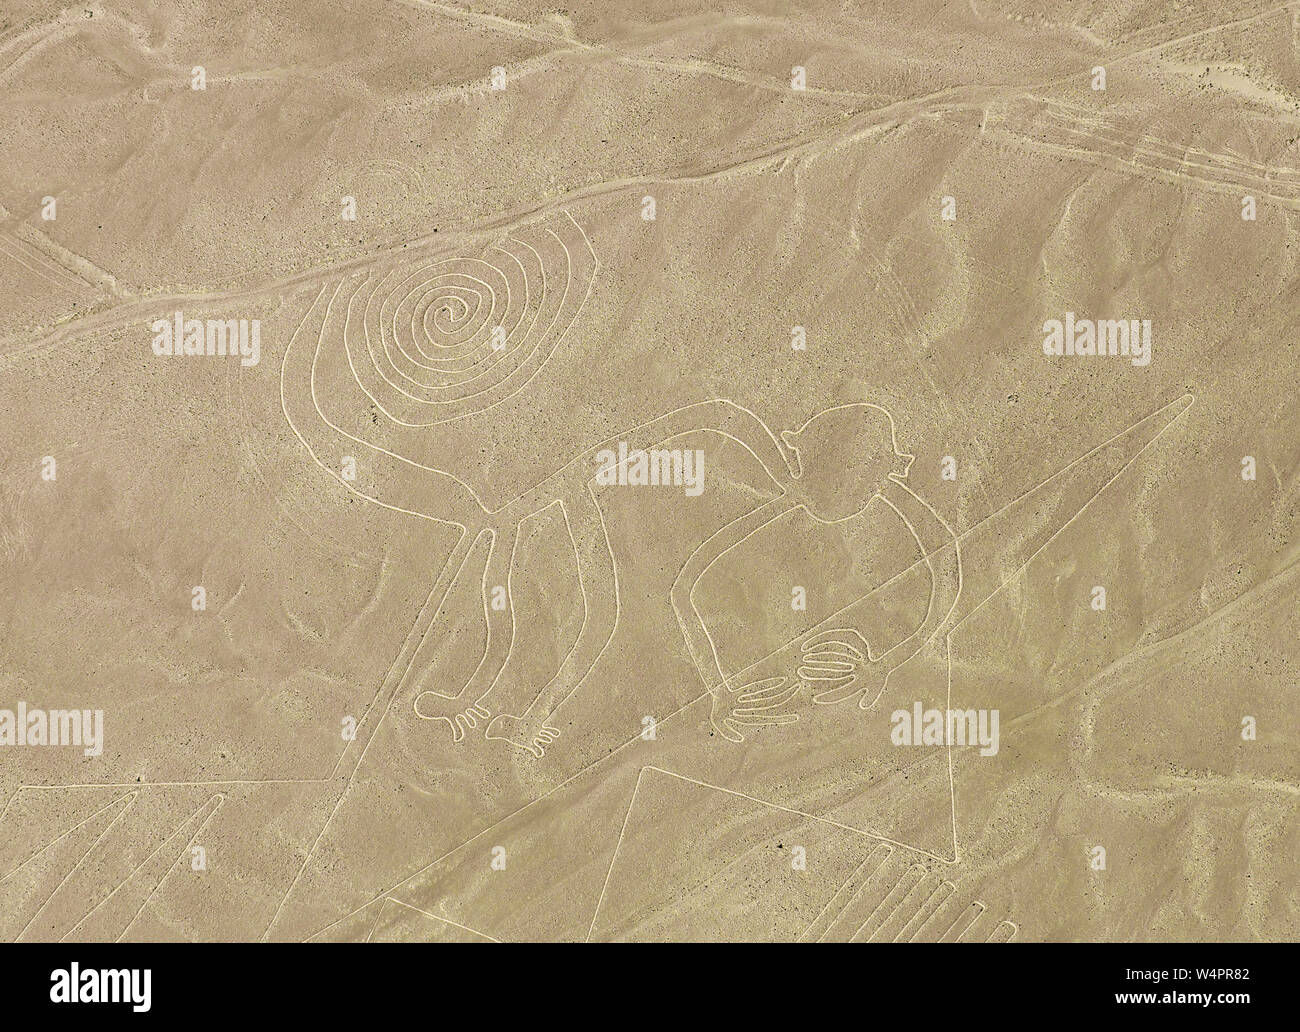 La scimmia geoglyph e disegno archeologico di progettazione nel deserto costiero del Perù nota come linee Nazca vicino la città di Nazca, Perù. Foto Stock